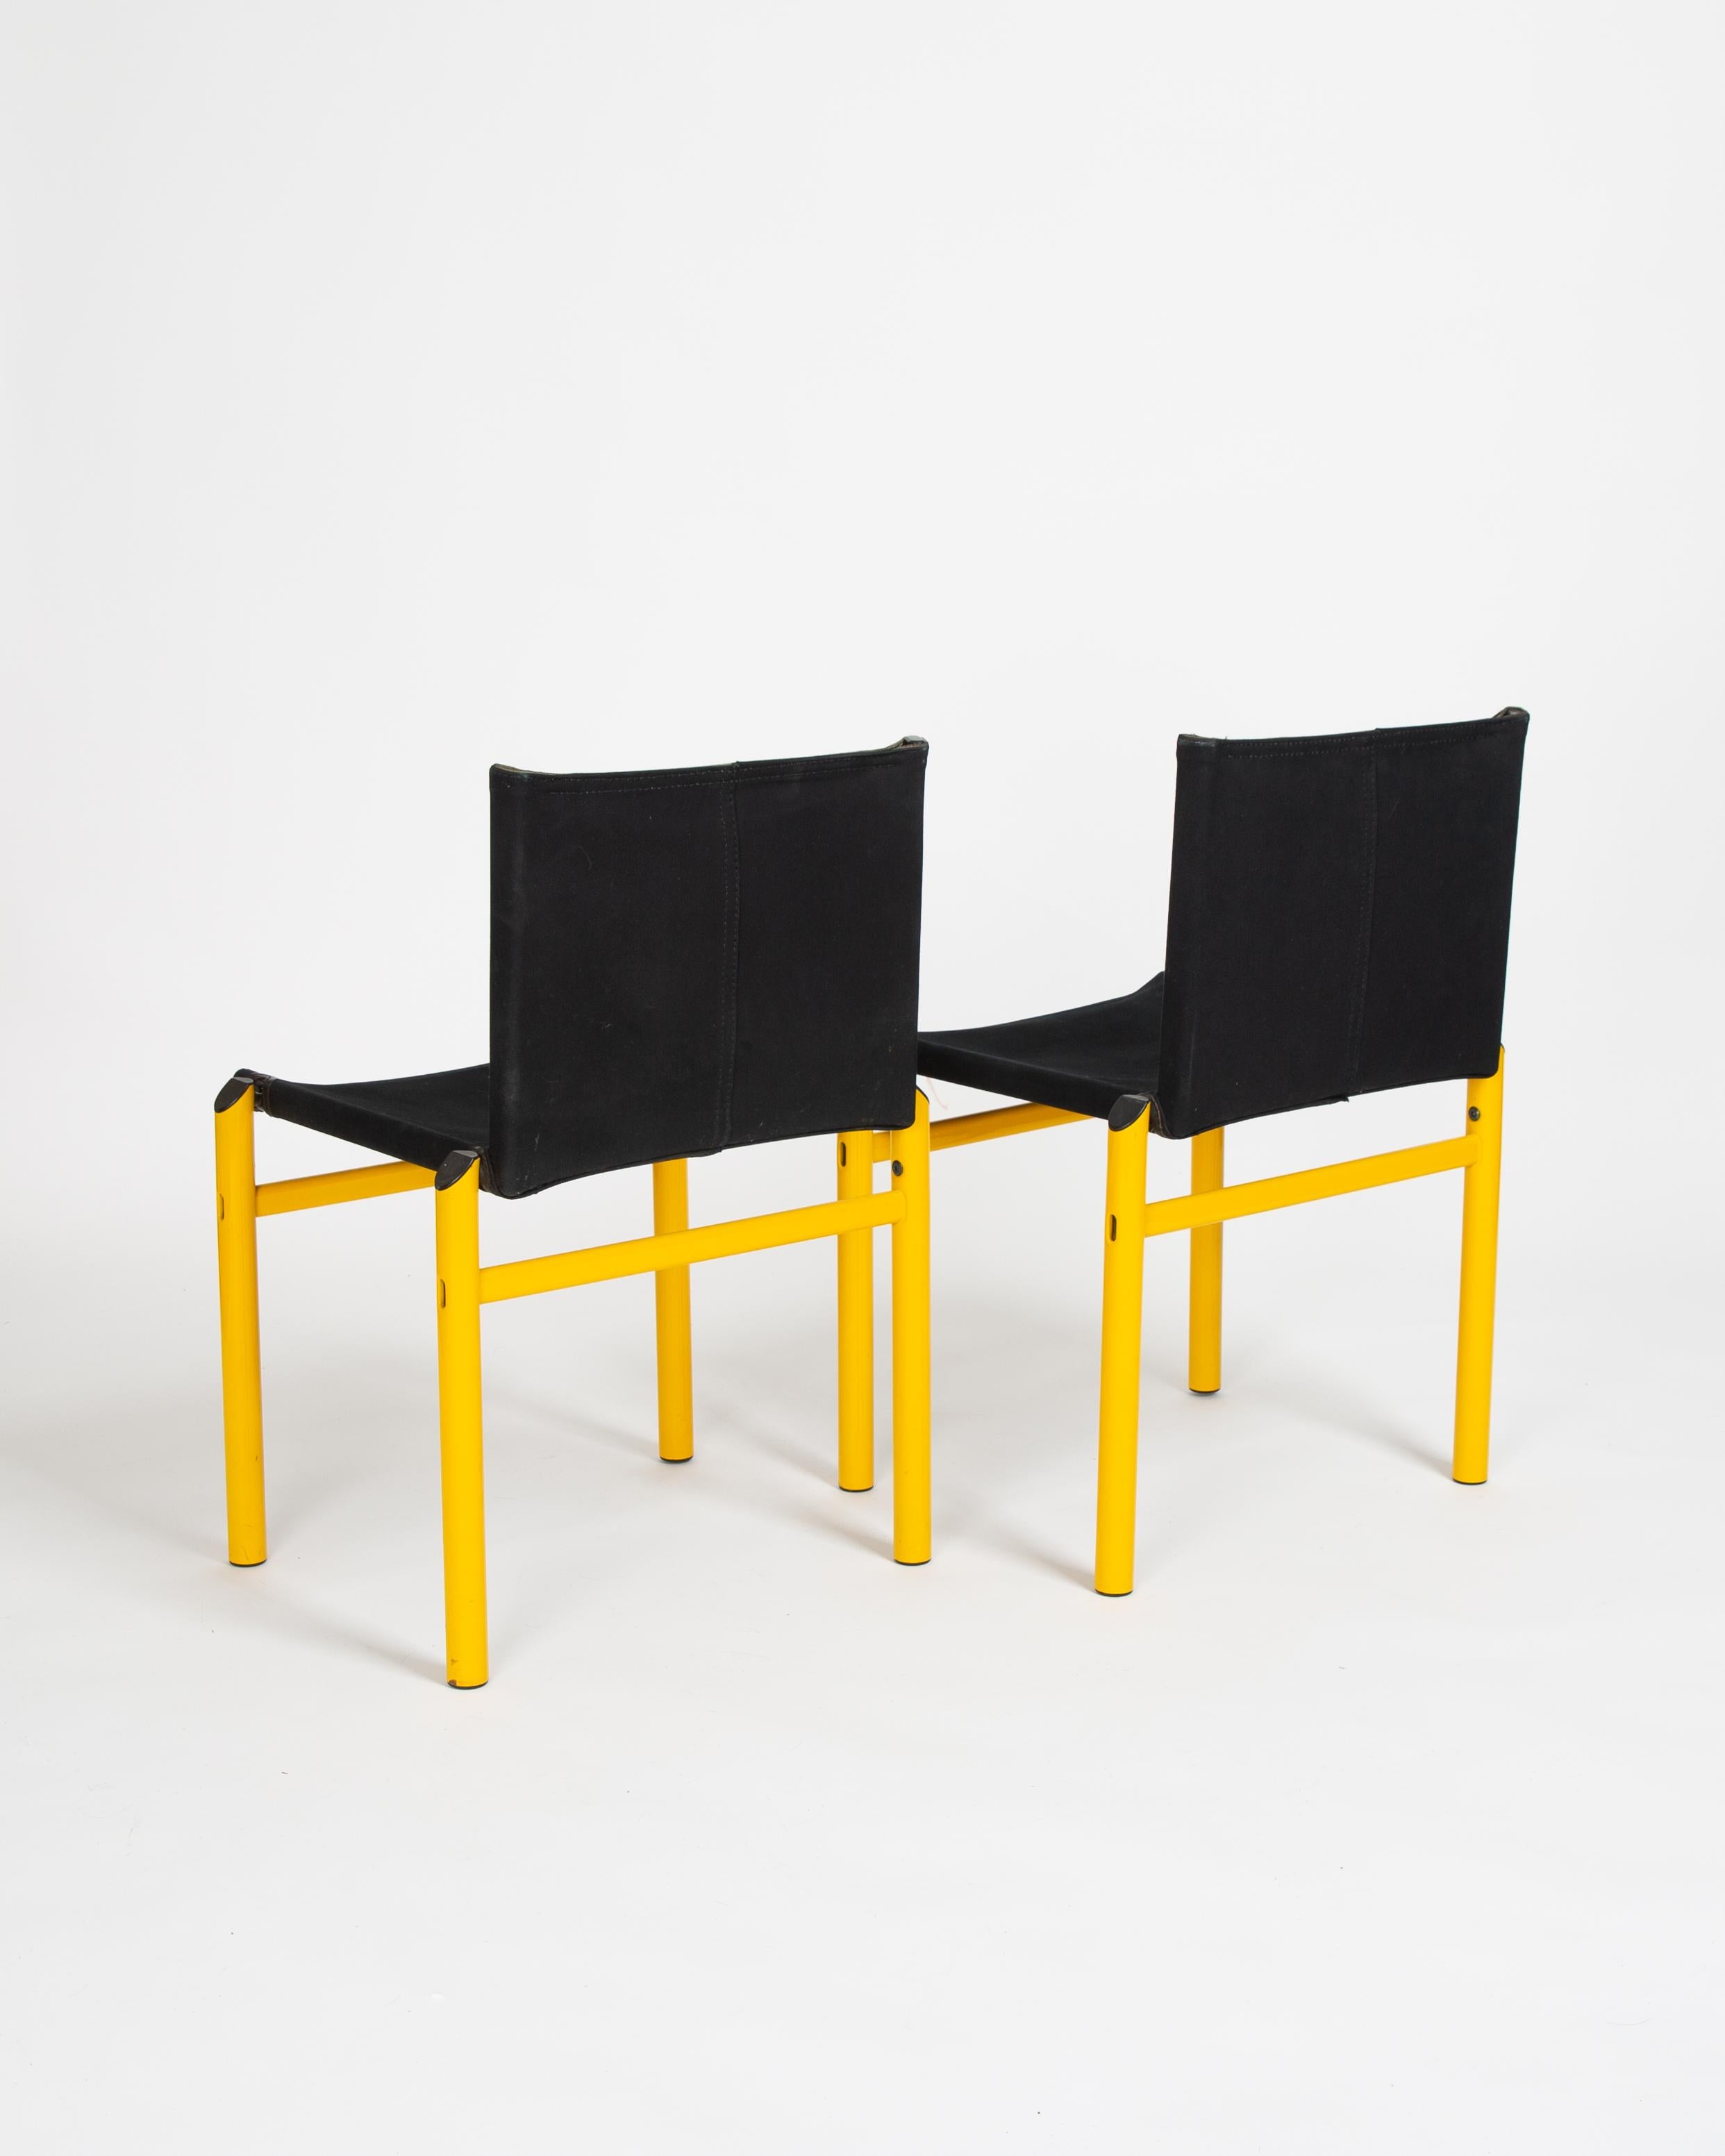 Paire de chaises Afra & Tobia Scarpa Mastro extrêmement rares. 

Le design Mastro a été créé sur le même principe structurel que la chaise Monk, mais dans un nouveau dialecte, une nouvelle forme et une nouvelle sensation que seules les années 1980